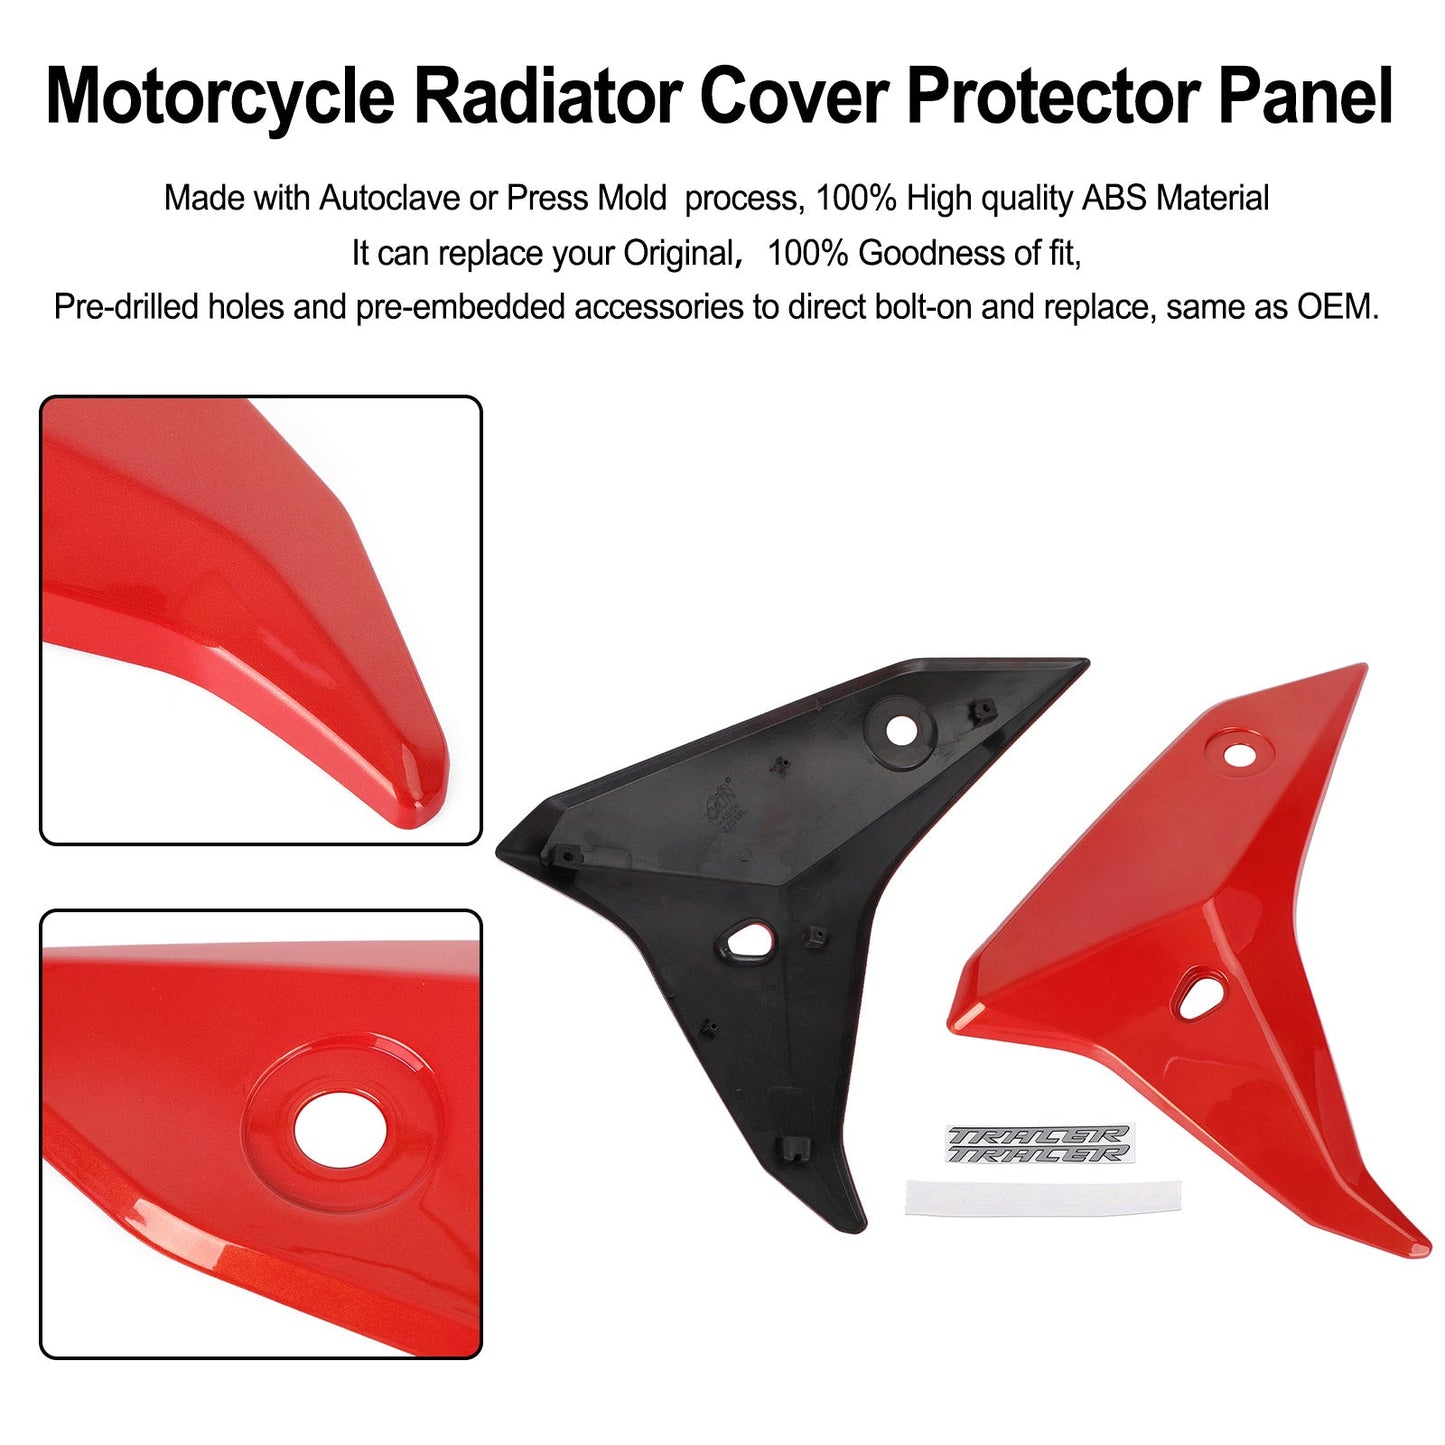 Radiator Side Cover Fairing Panels for YAMAHA tracer 900 GT 2018-2020 Black